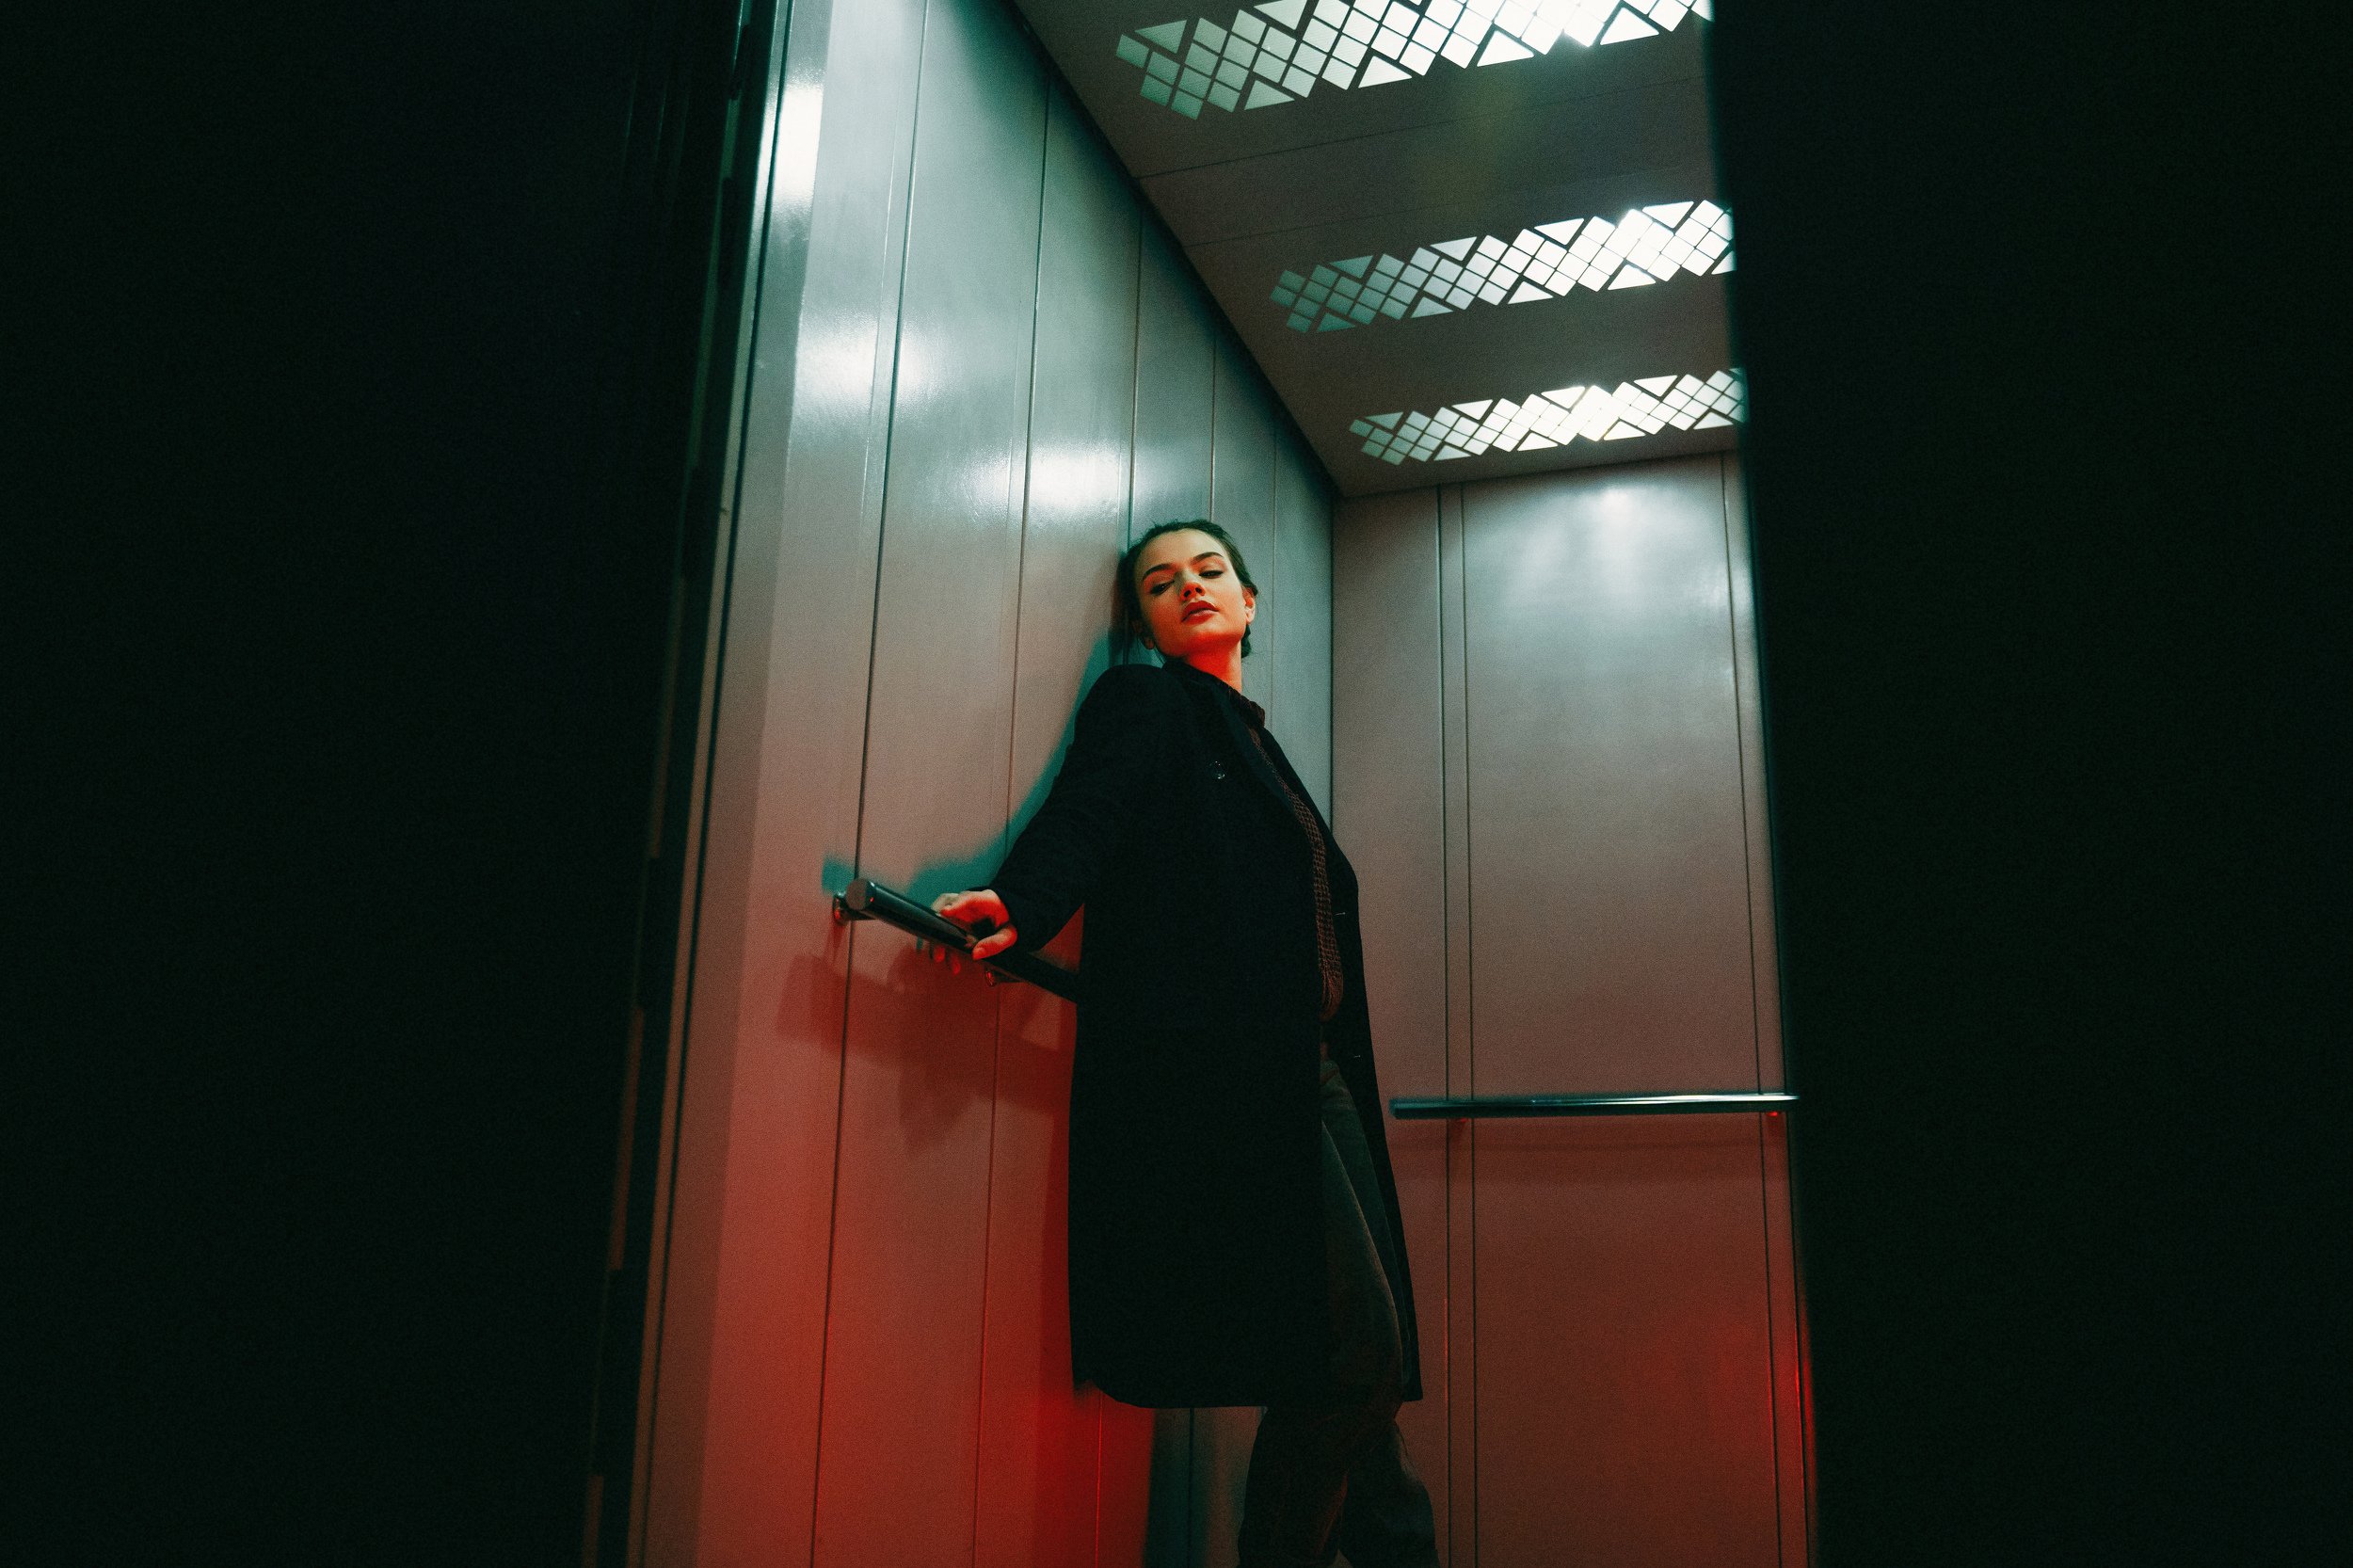 лифт девушка красный зеленый свет пальто пучок, Хайруллин Ильдар